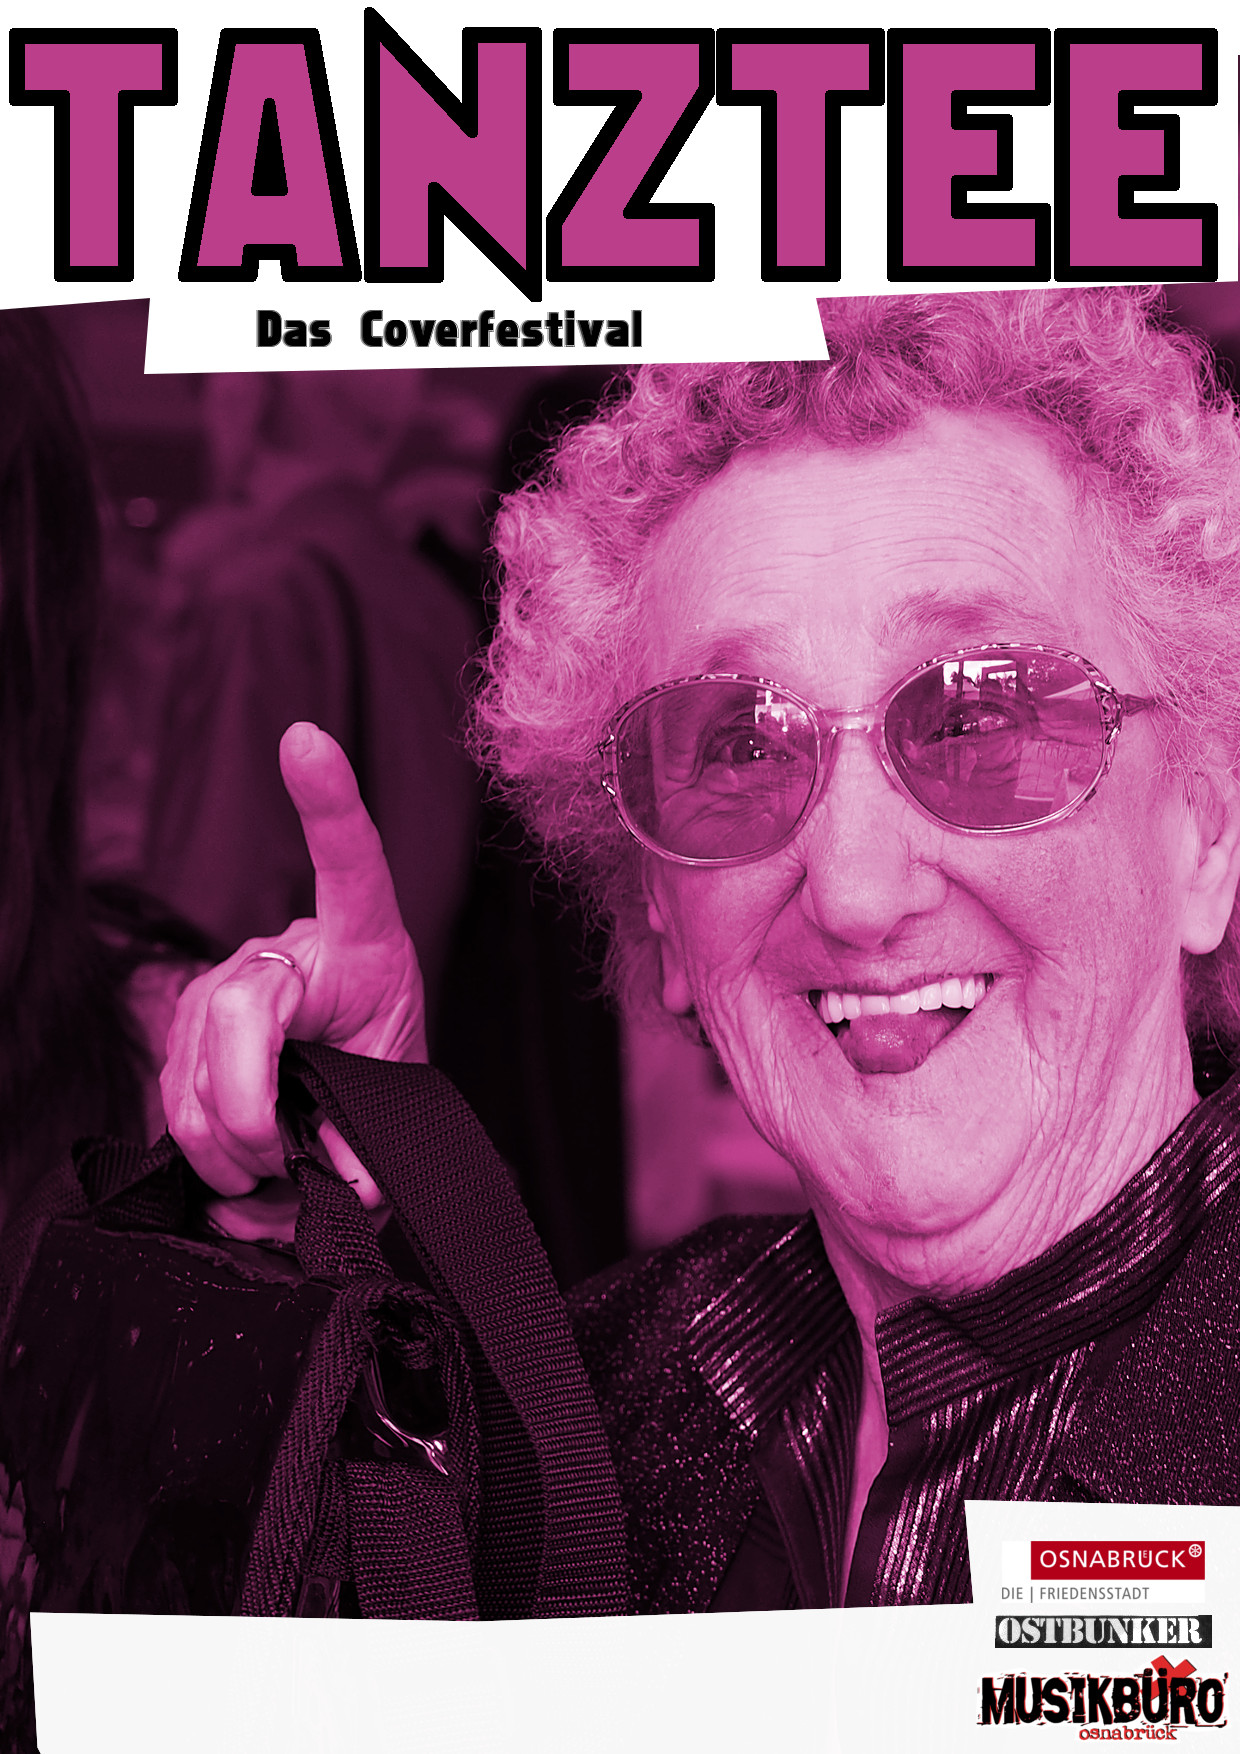 Tanztee Coverfestival - am 15.10.2022 im Ostbunker Osnabrück